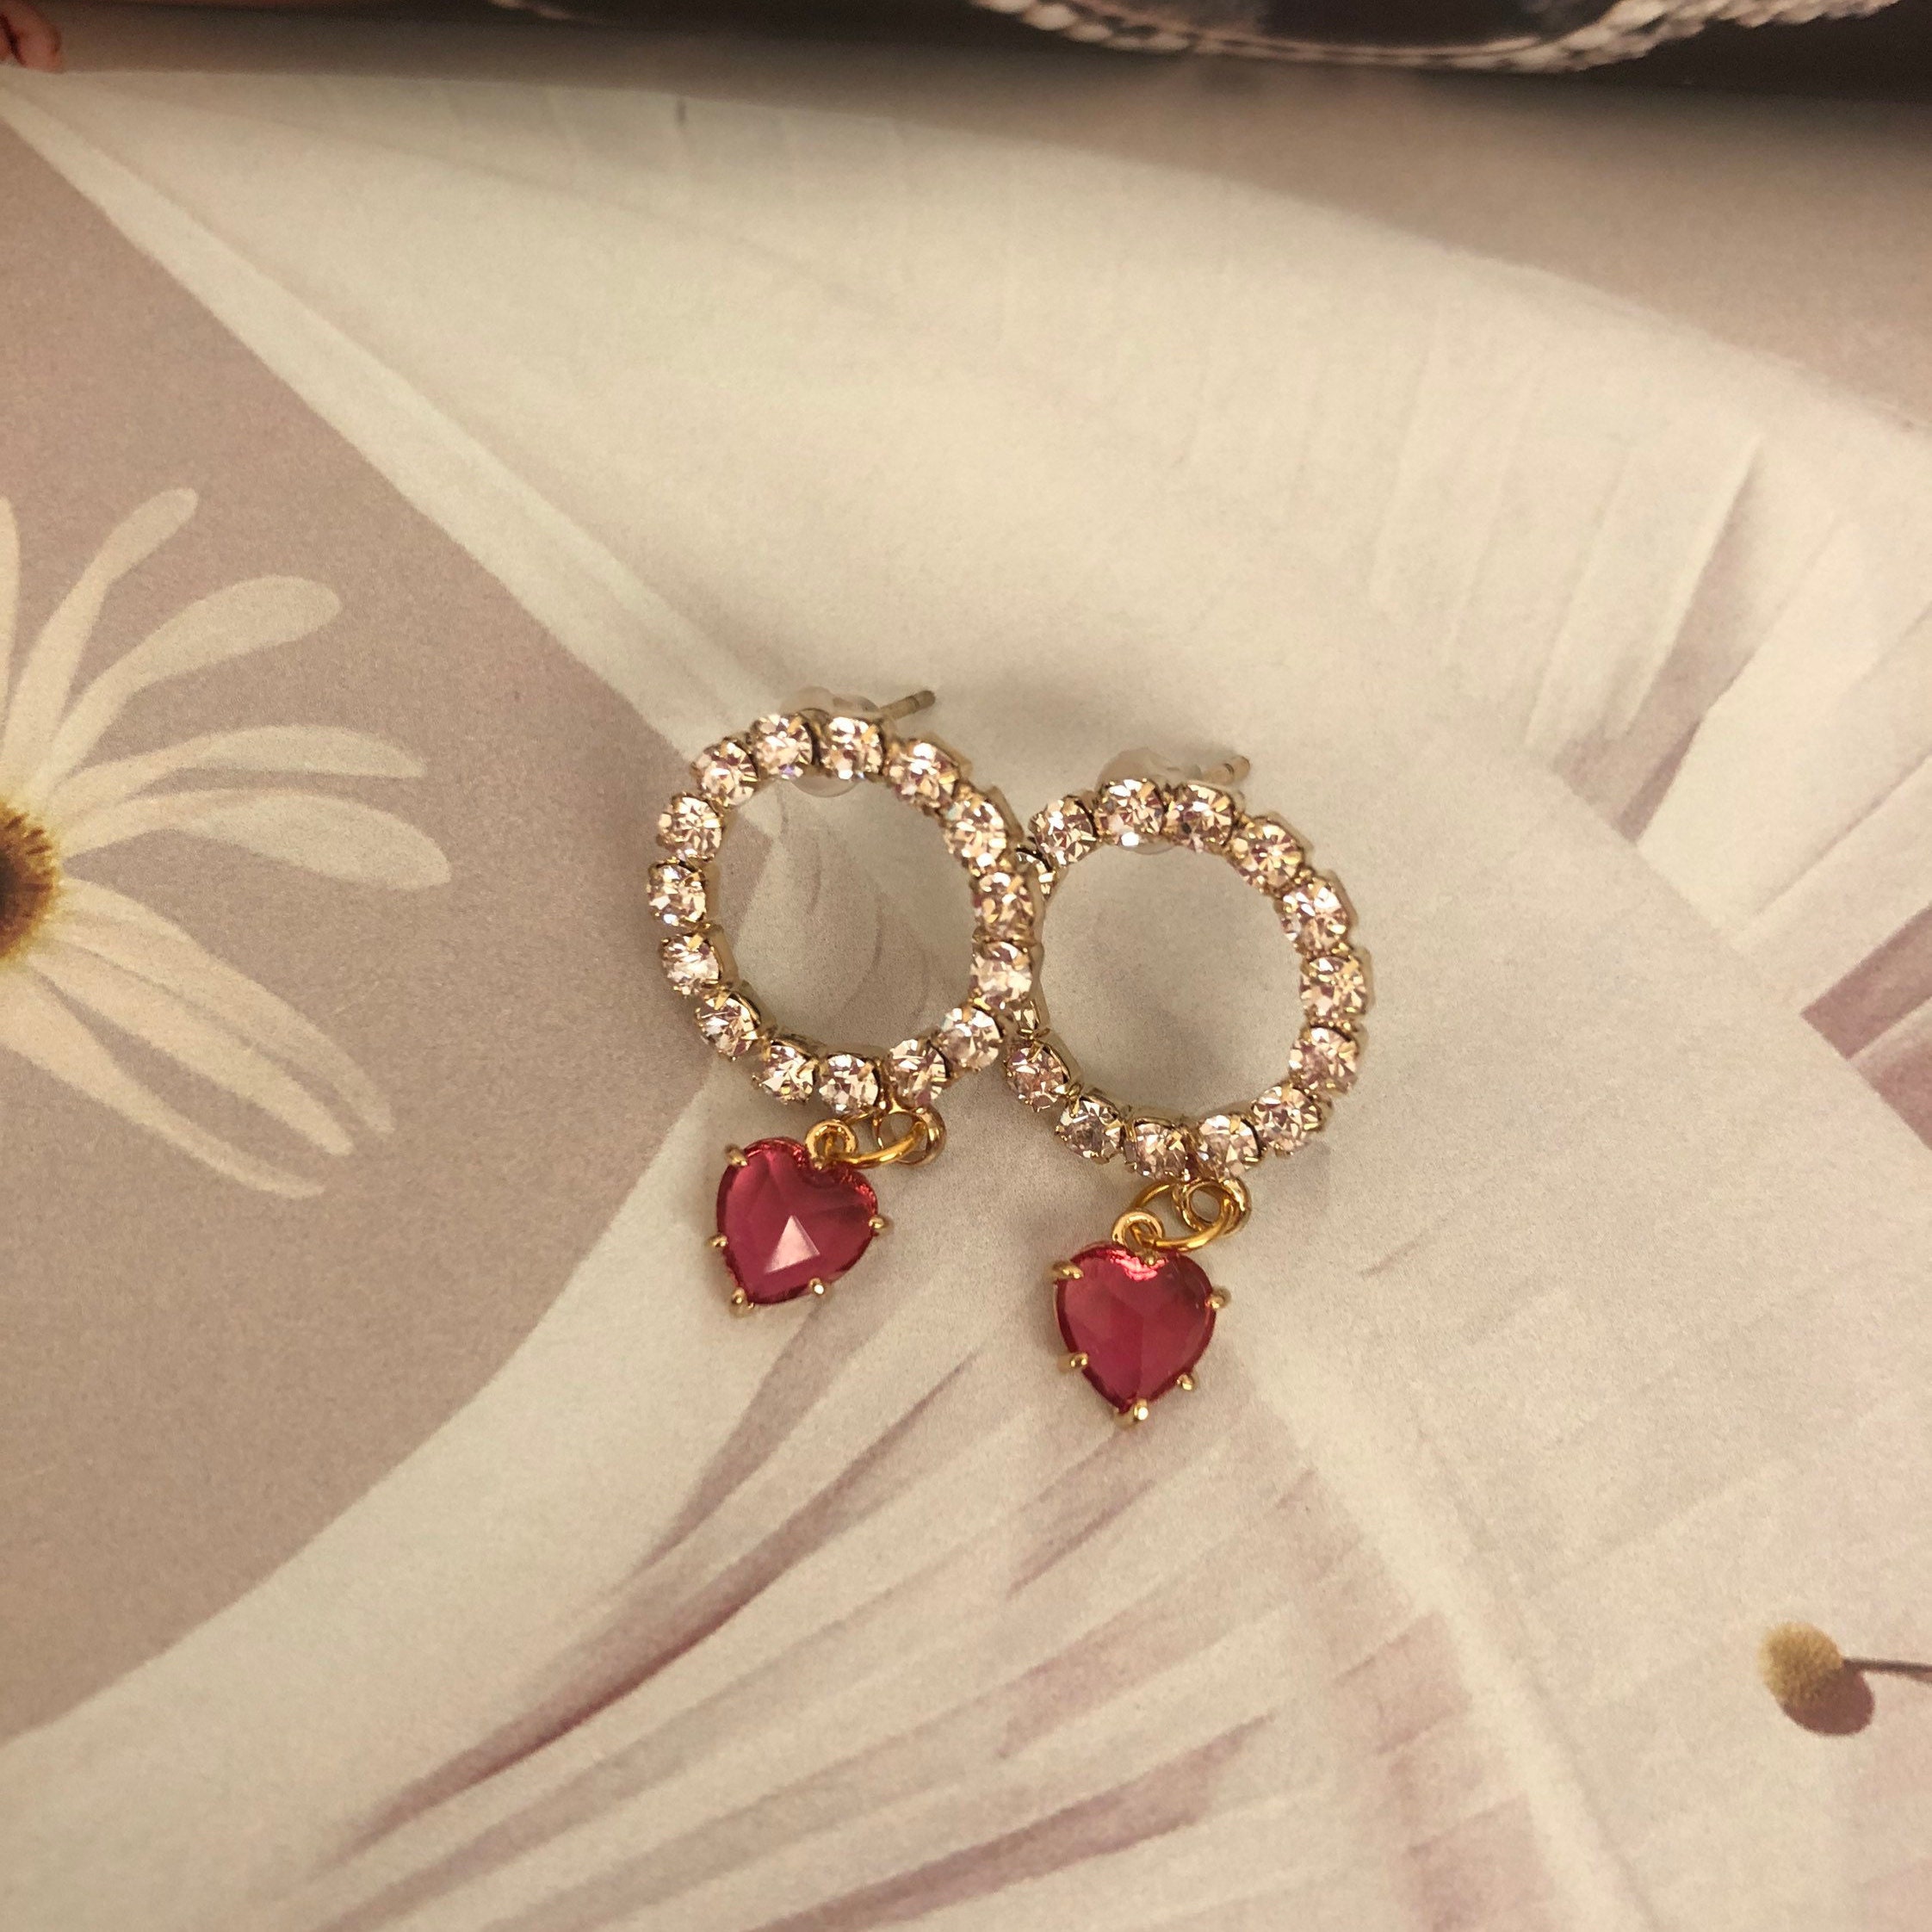 Zircon Circle Earrings Red/Pink Ruby Heart Earrings | Etsy